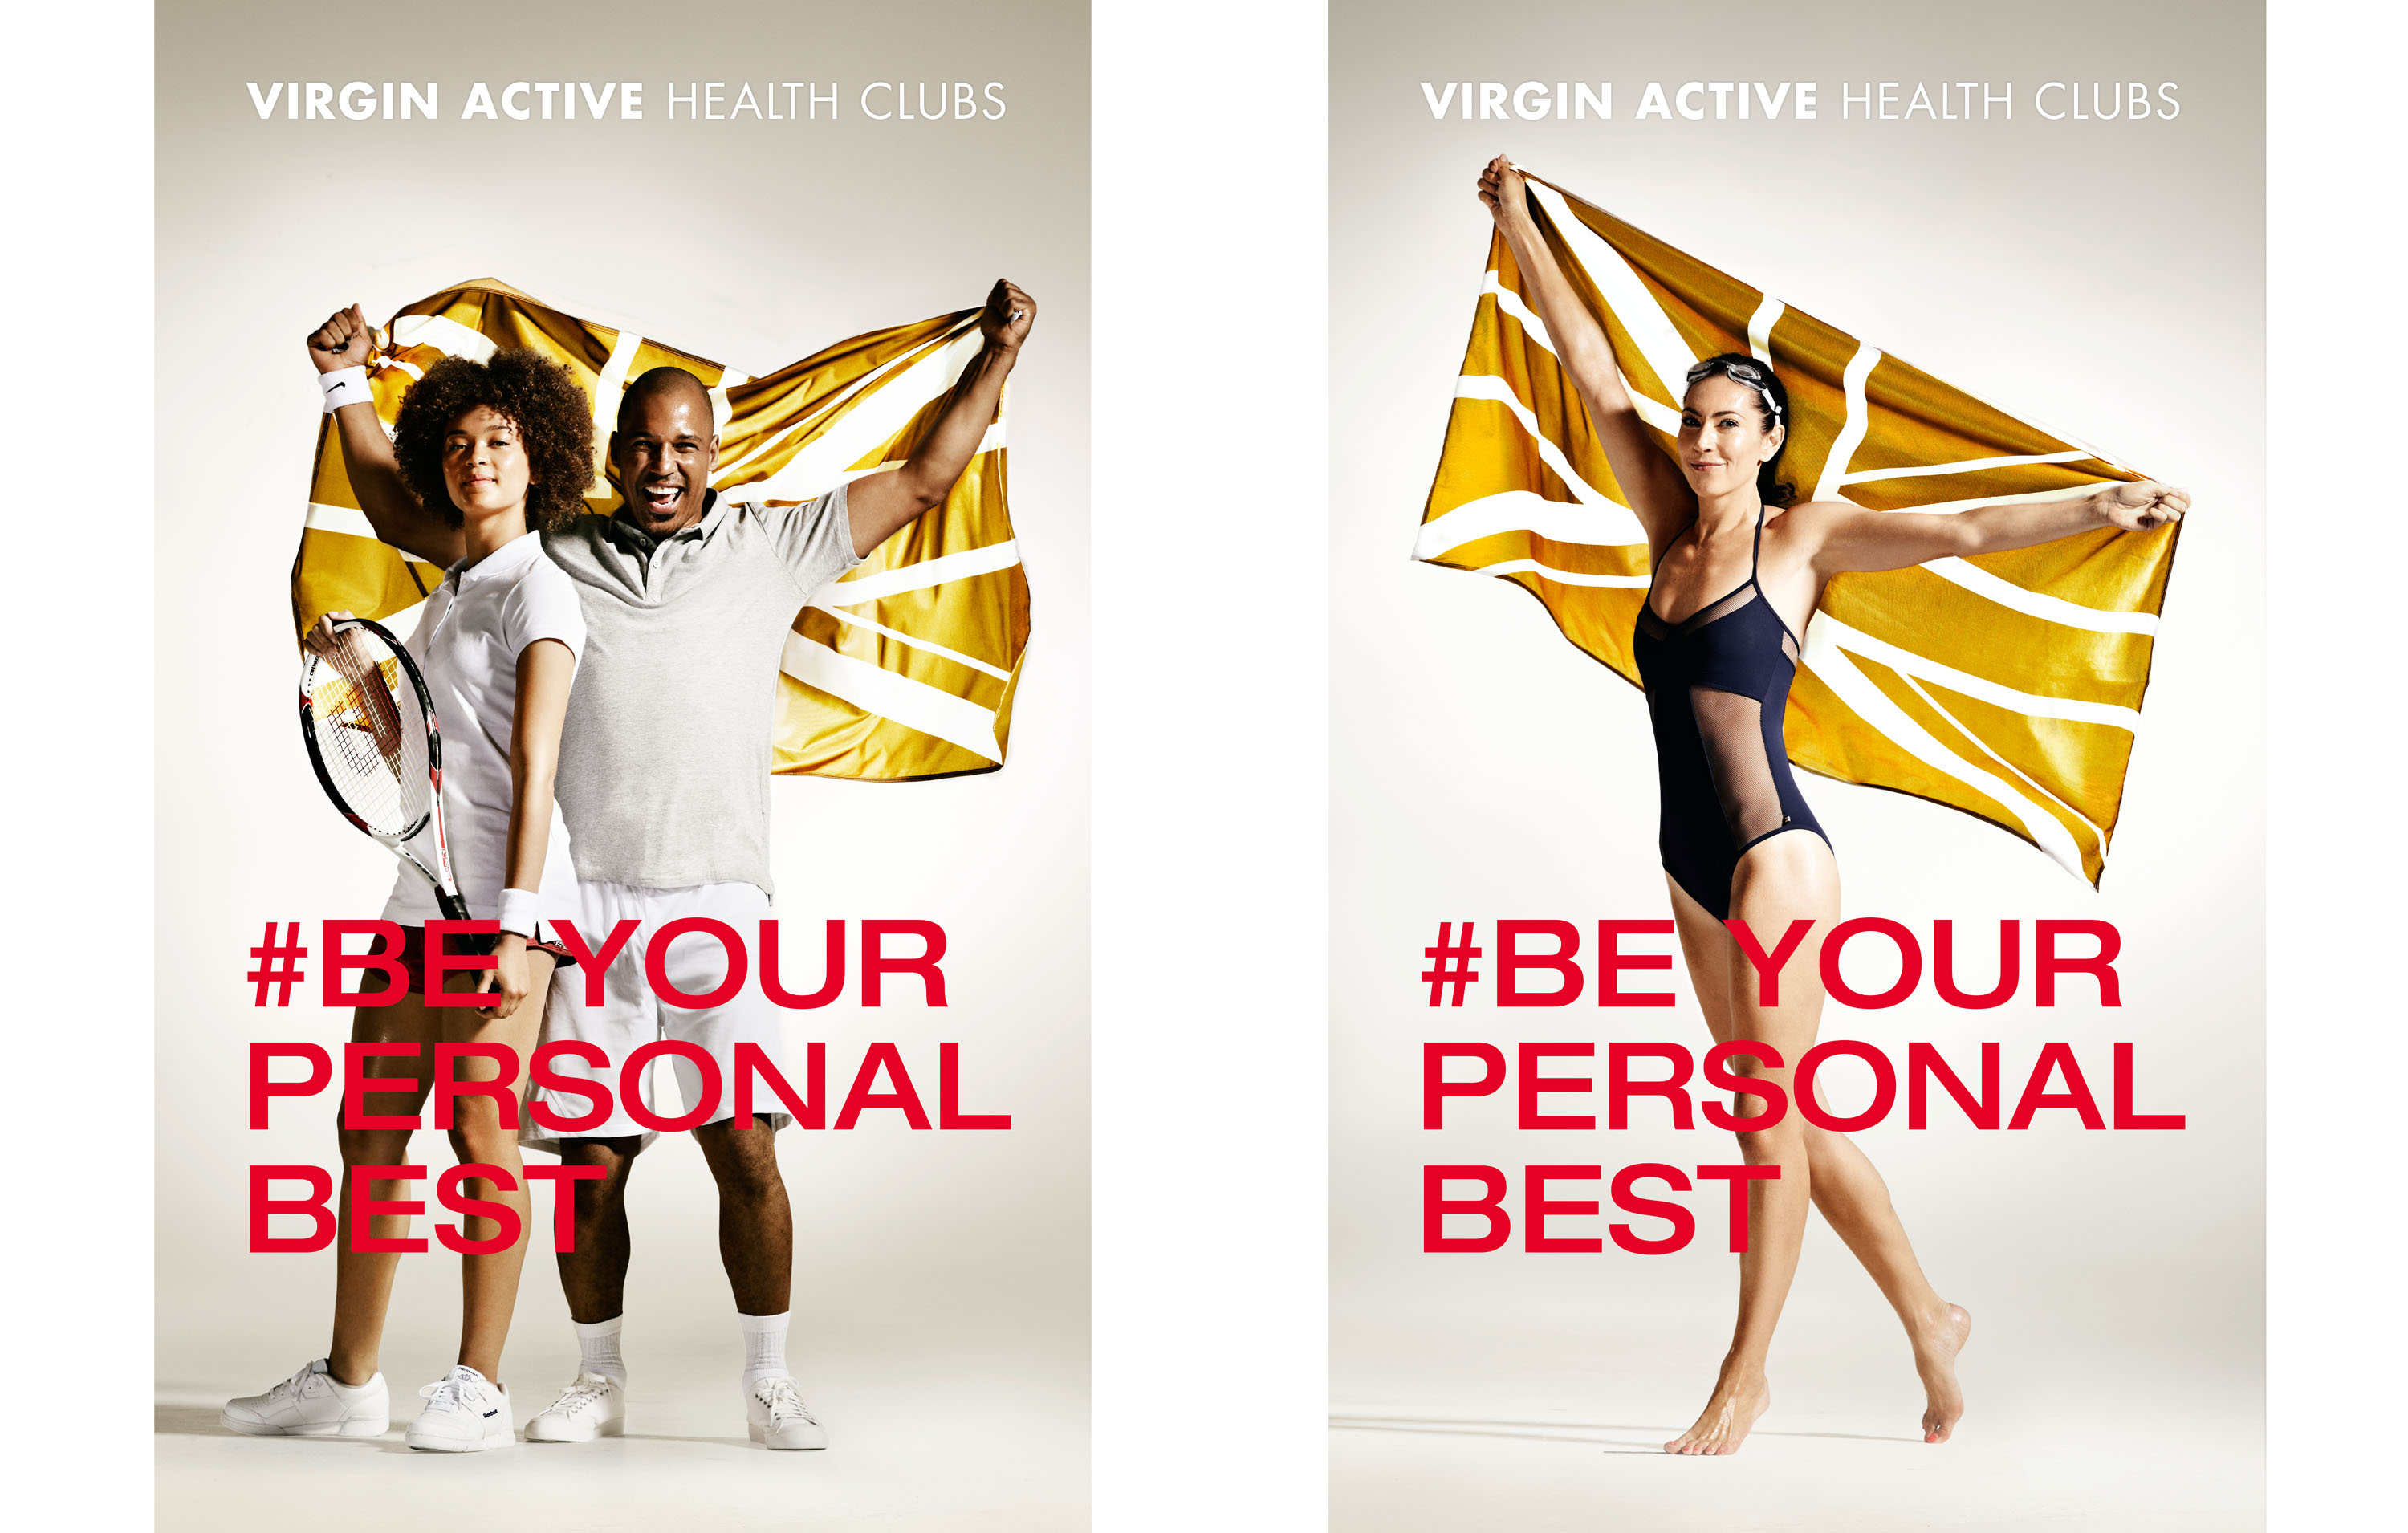 VIRGIN ACTIVE HEALTH CLUBS, DETLEF SCHNEIDER PHOTOGRAPHY